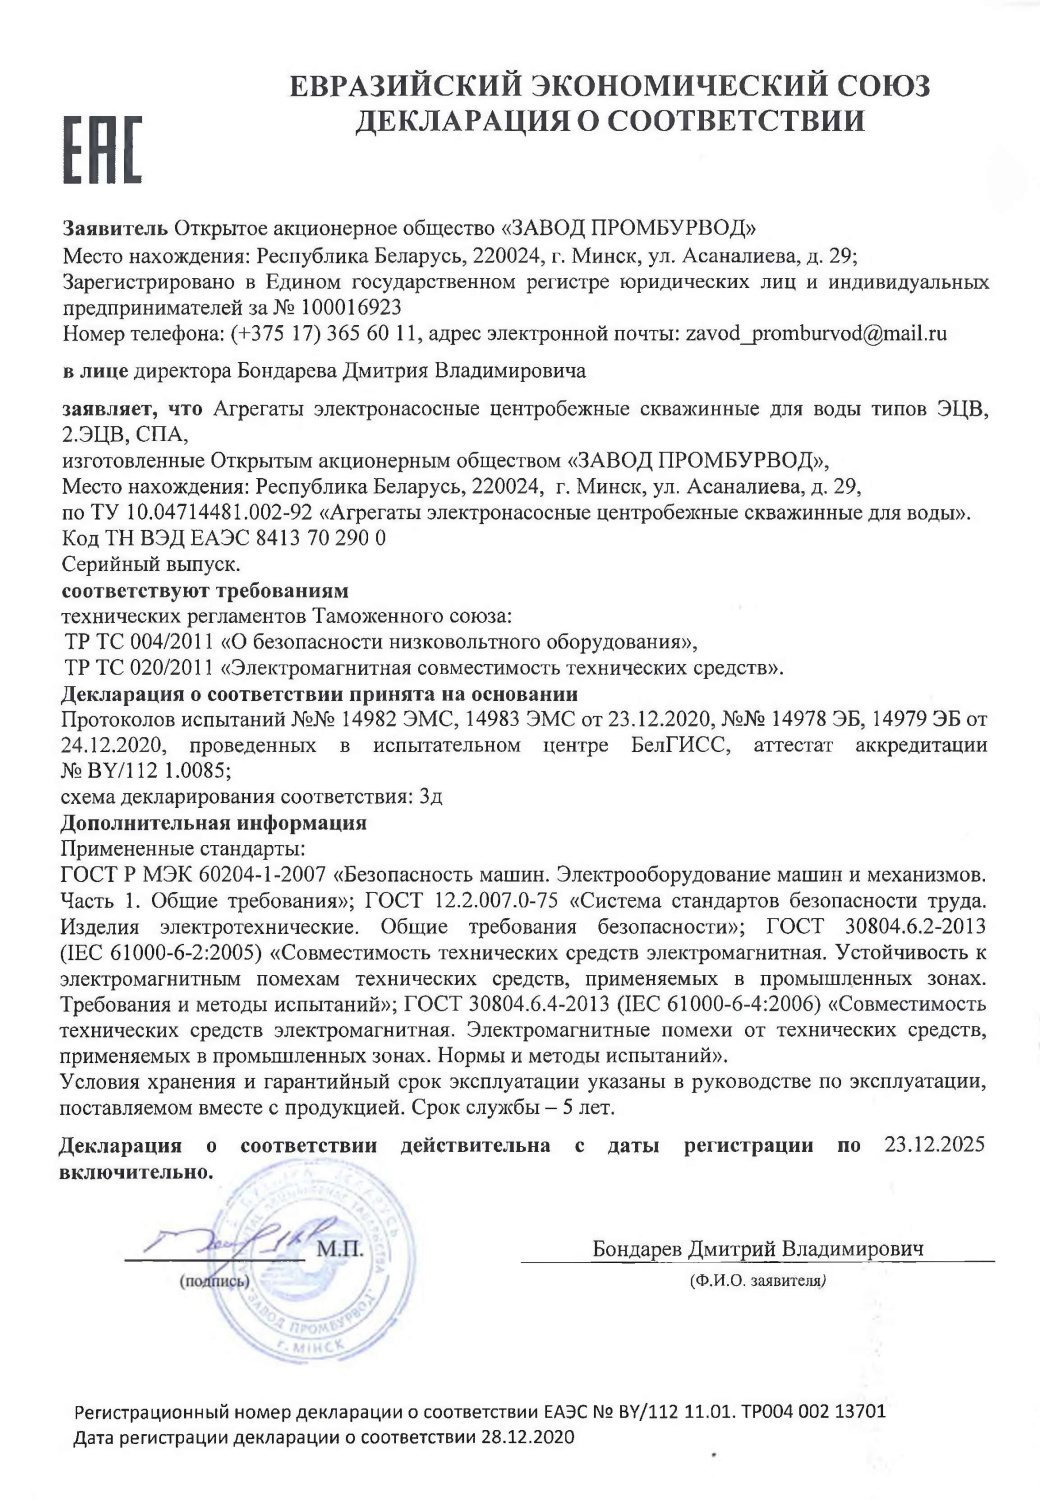 Декларация ЕАЭС о соответствии насосов ОАО «Завод Промбурвод»